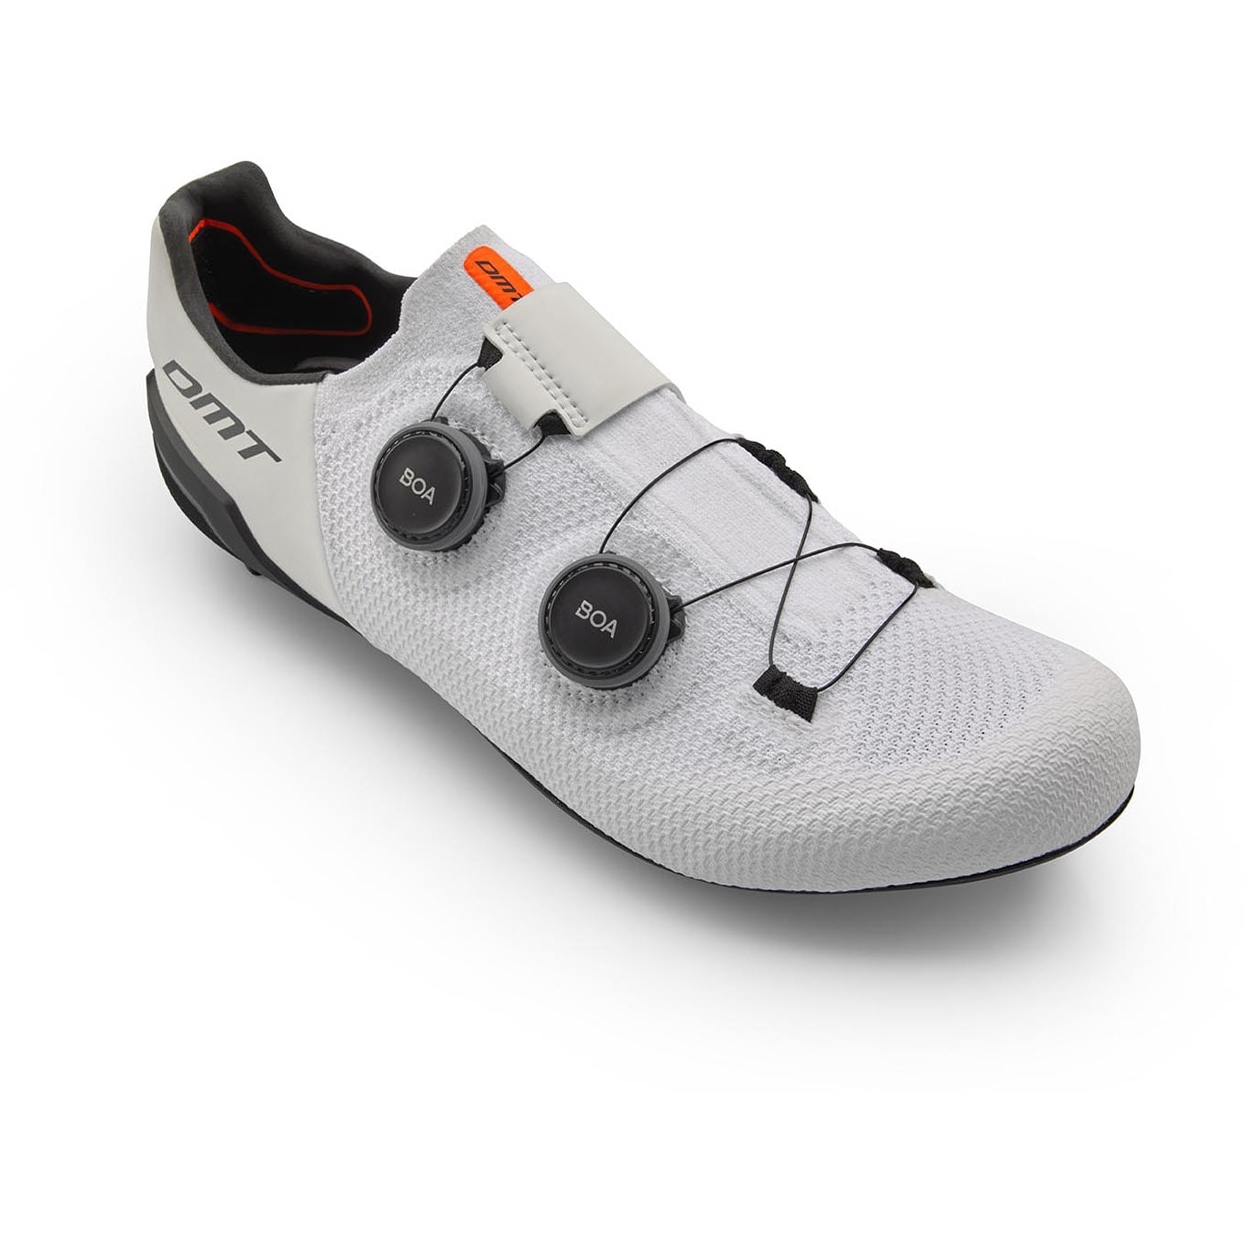 Produktbild von DMT SH10 Rennrad Schuhe - weiß/schwarz